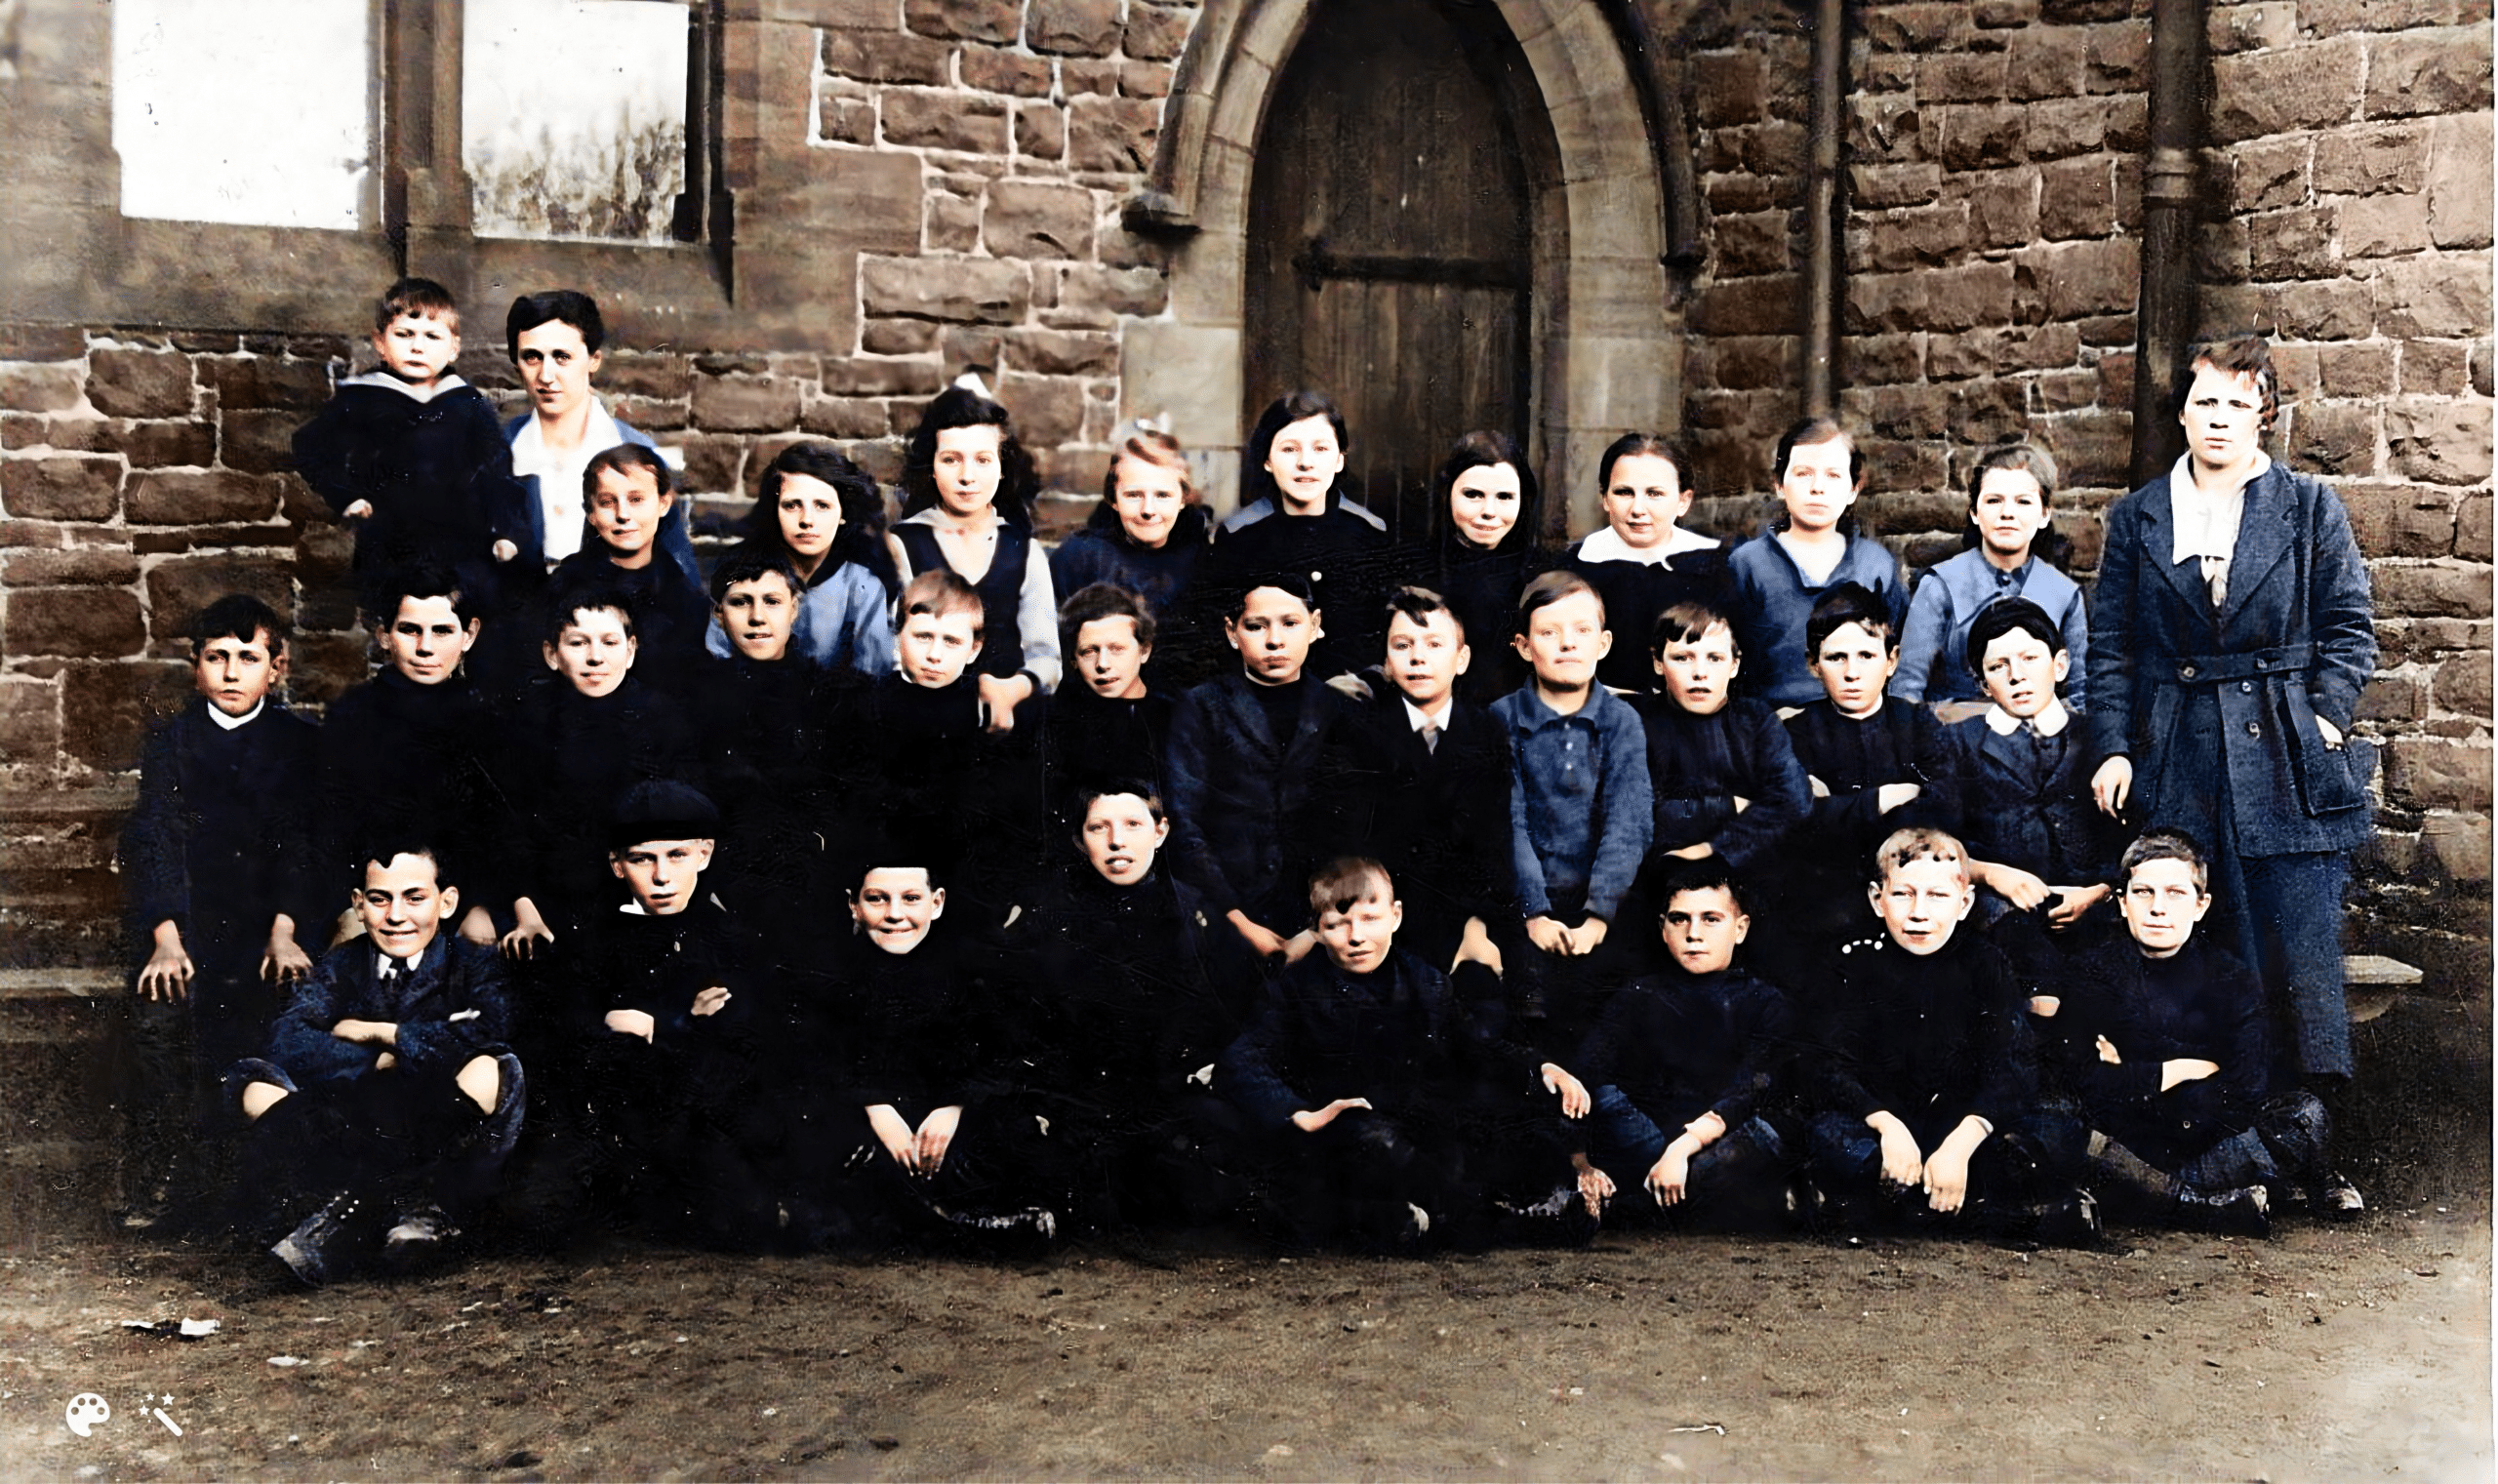 Mary Dawson (geborene Curren, stehend, links) in der Church of England School in Newbiggin-by-the-Sea. Foto koloriert und verbessert von MyHeritage